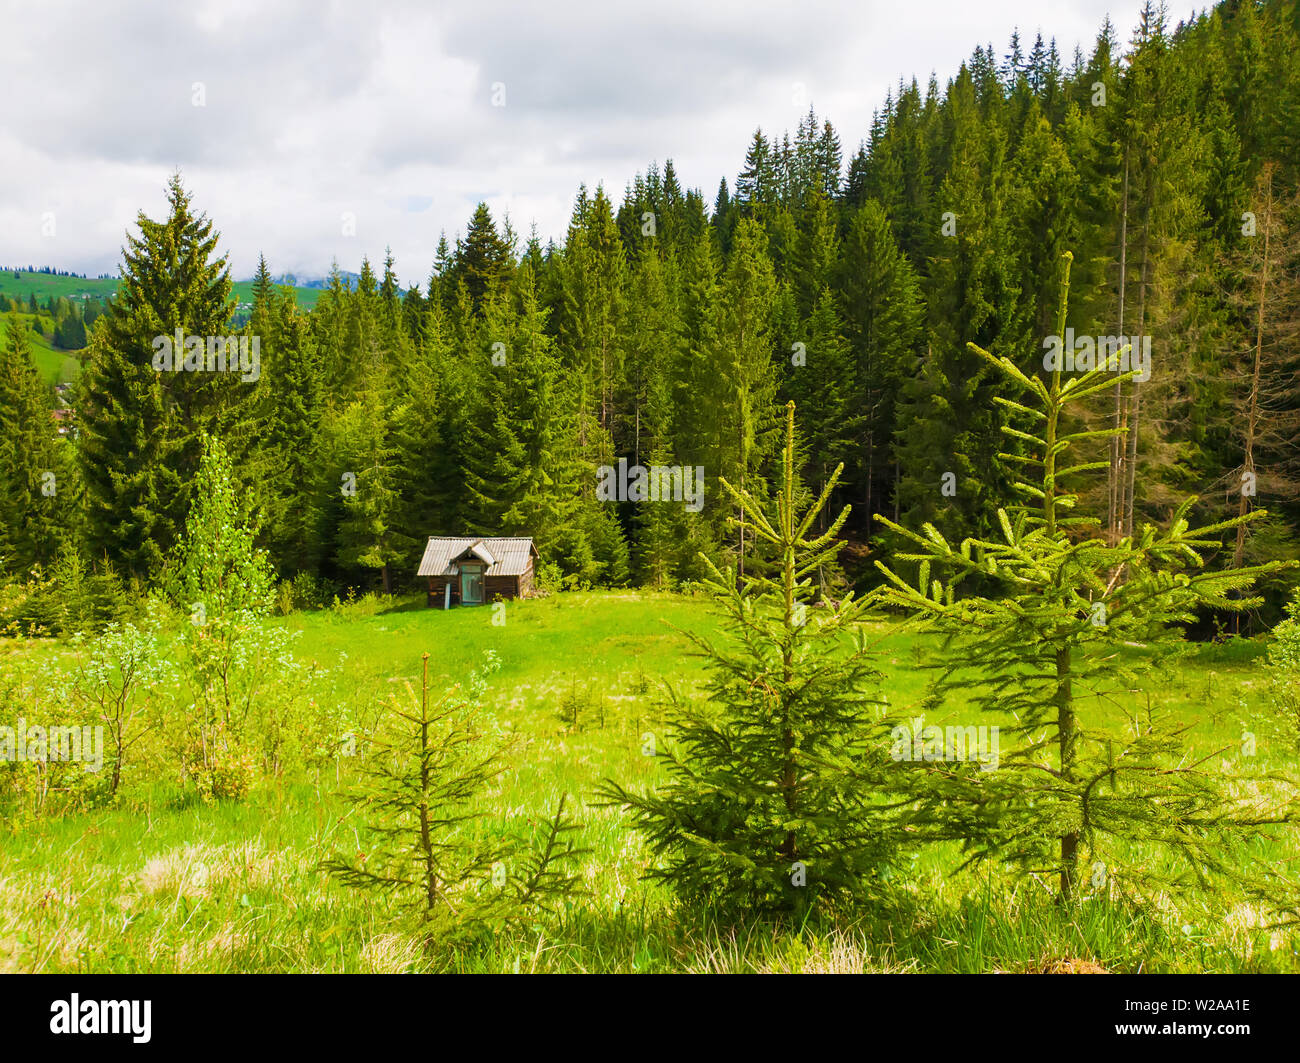 Llittle sapins sur l'herbe verte devant un cottage en bois entourée de forêts de conifères. Printemps pittoresque scène idyllique de la carpe Banque D'Images